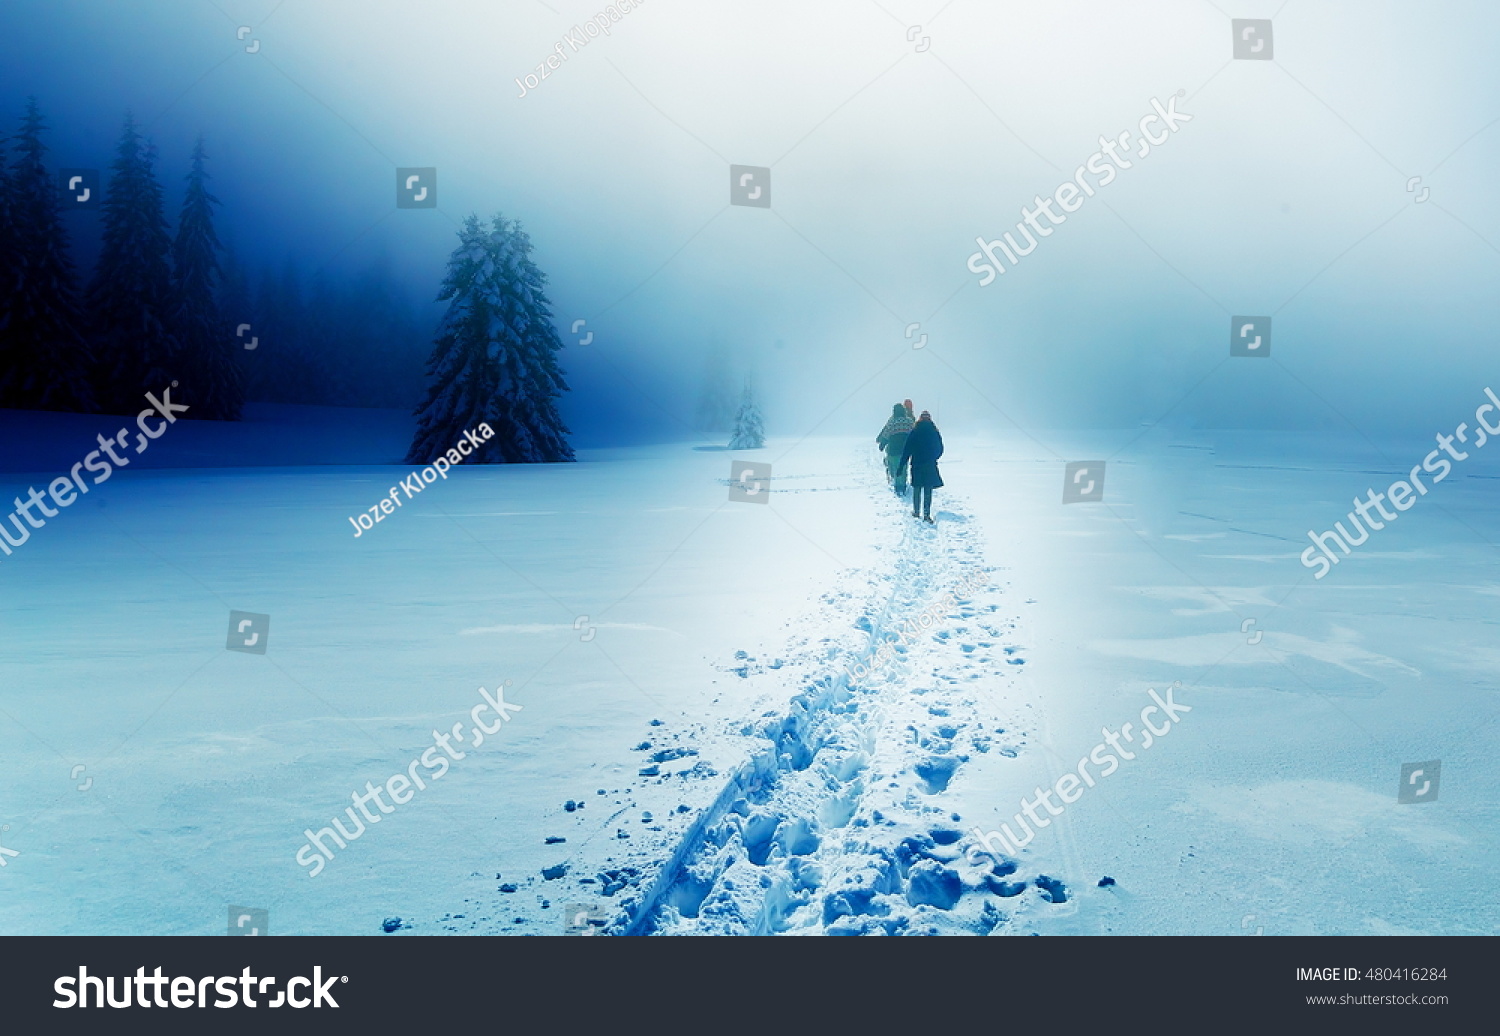 People alone in Winter blizard. Beautiful mountain snowy landscape #480416284